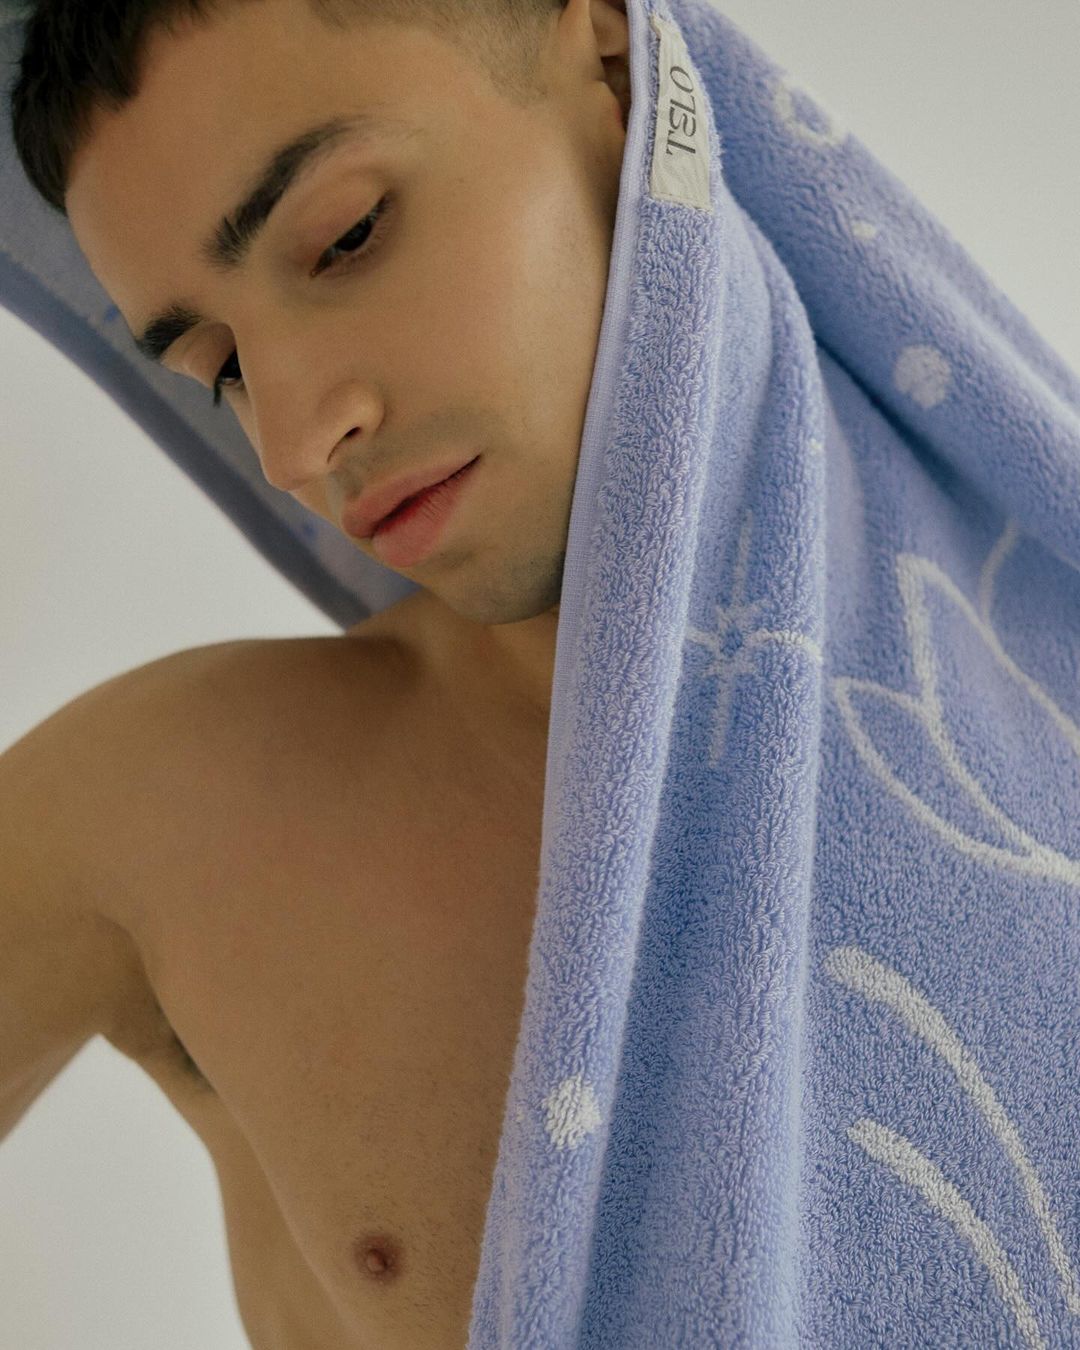 Как создаются эстетичные полотенца в коллаборации с художниками: история бренда Telo (фото 5)